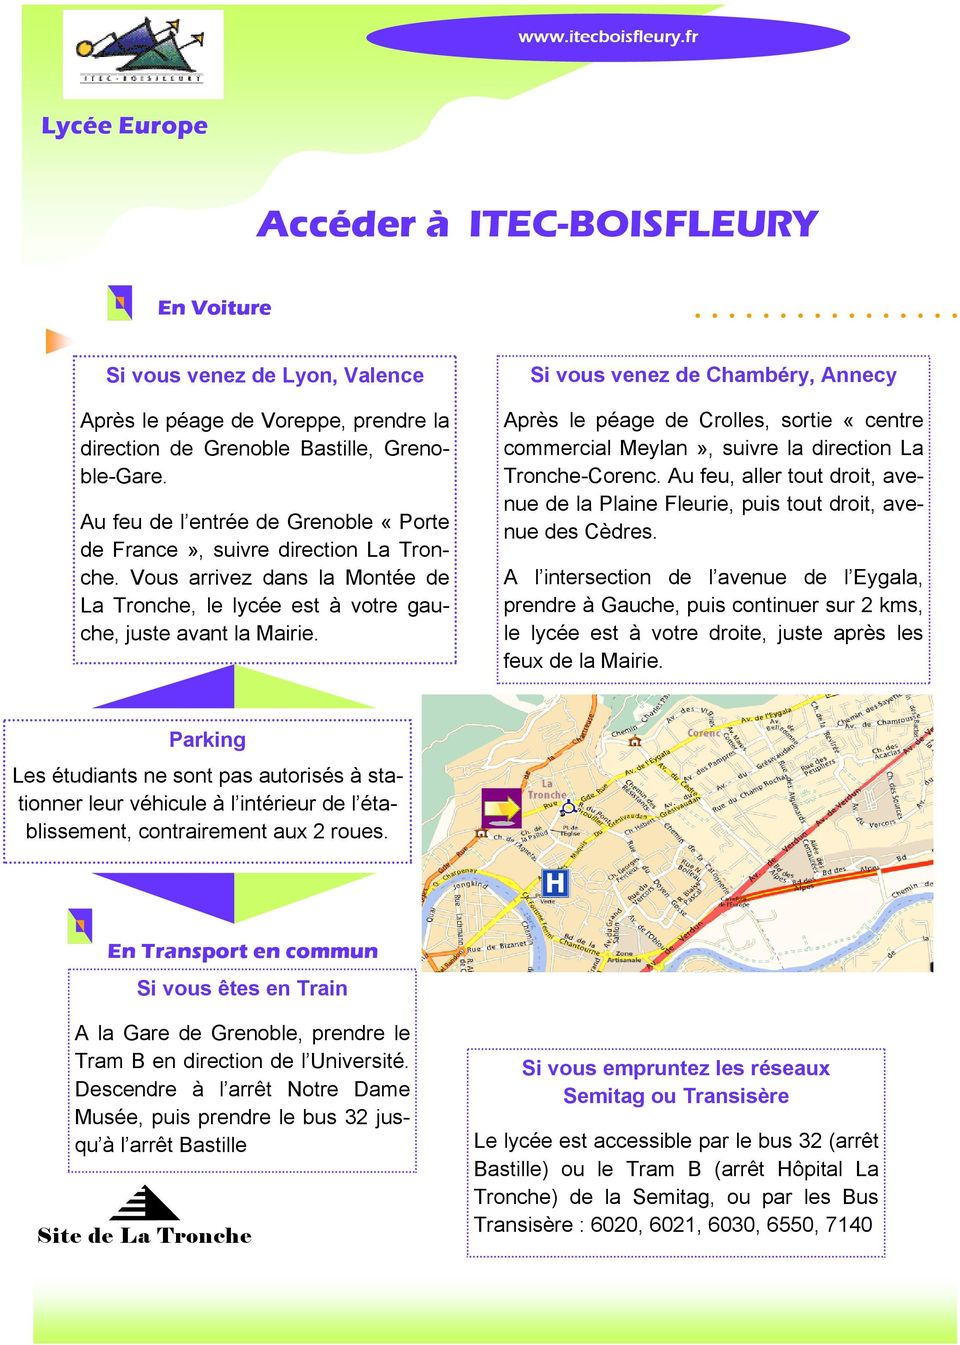 Si vous venez de Chambéry, Annecy Après le péage de Crolles, sortie «centre commercial Meylan», suivre la direction La Tronche-Corenc.